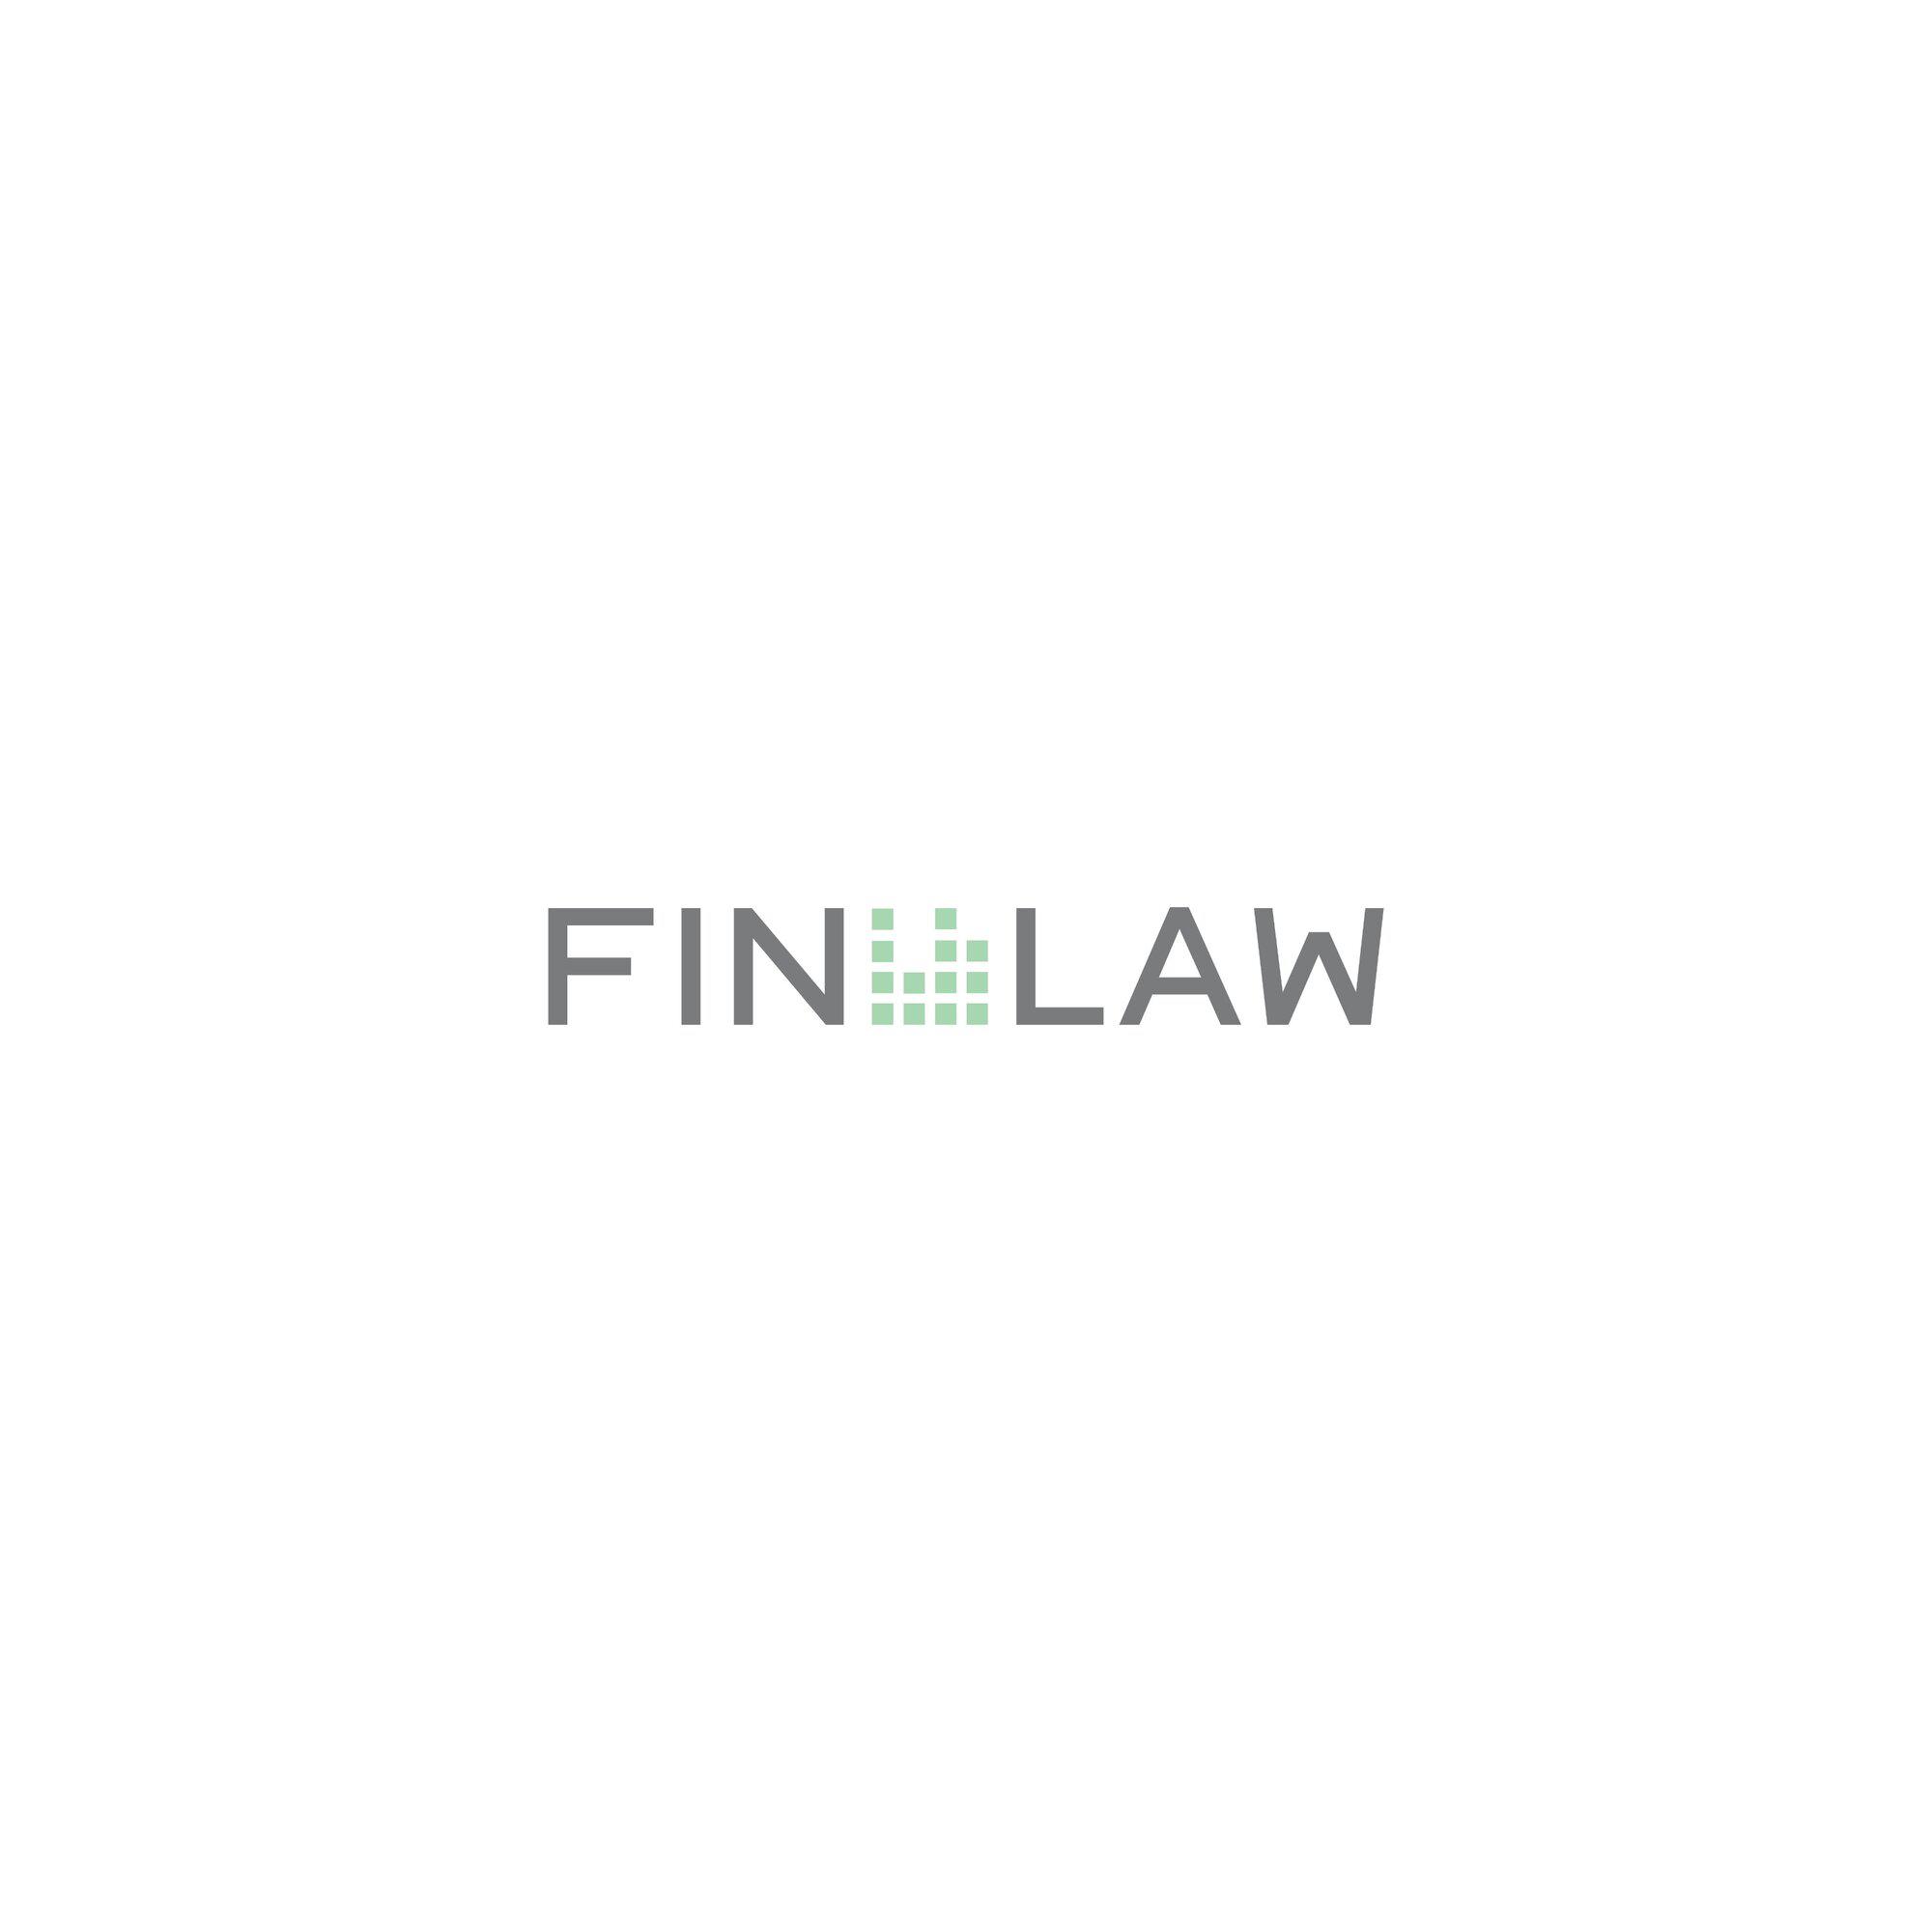 Kundenbild groß 2 FIN LAW - Legal Financial Advisory